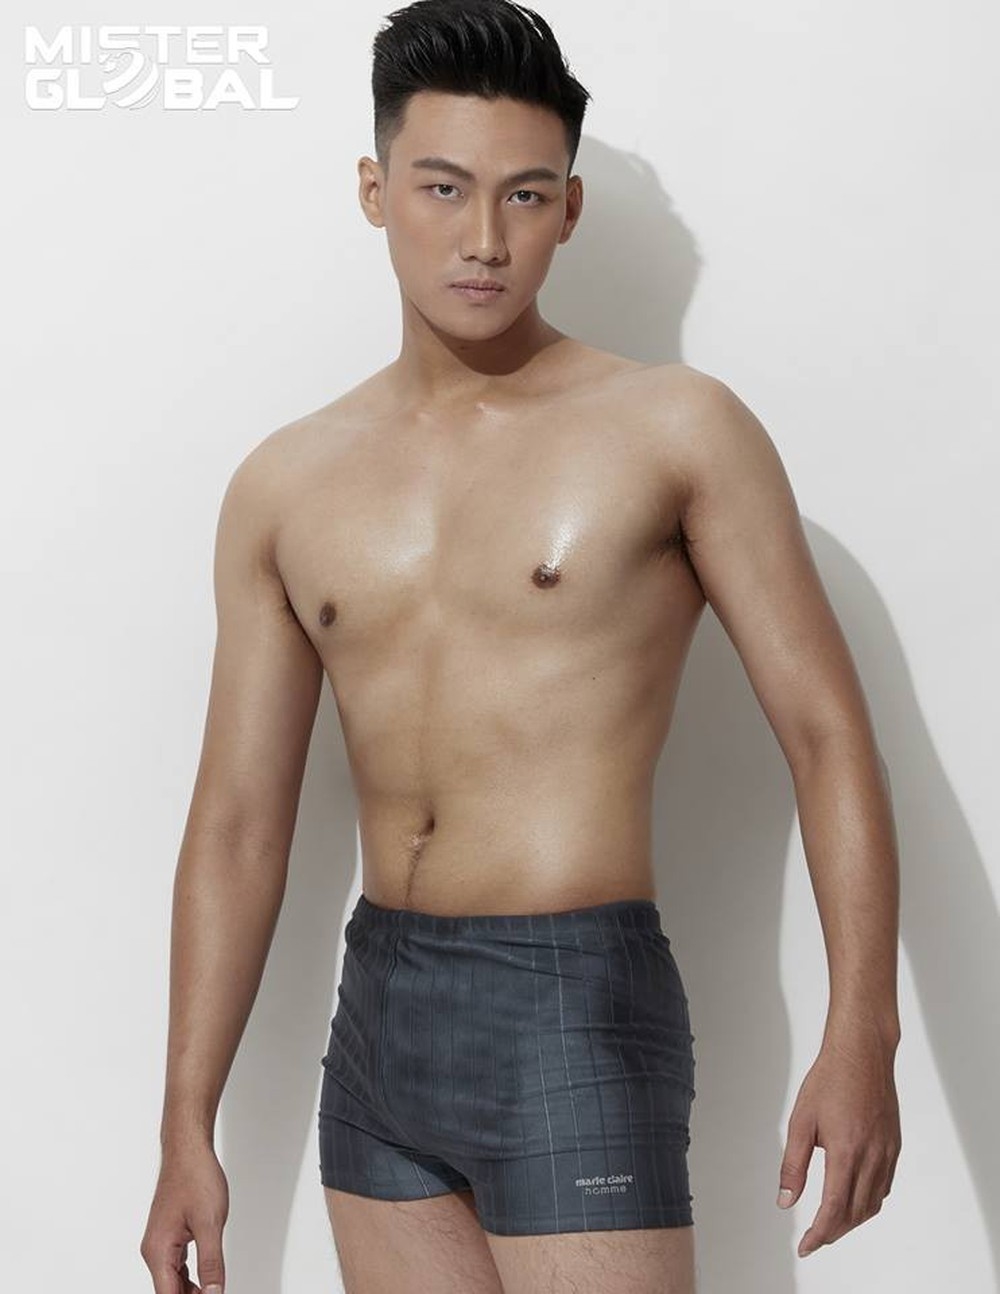 
Trước đây, Trung Kiên nhiều lần khiến CĐM ngán ngẩm với body toàn mỡ của mình ngay từ khi anh chàng tham gia Nam Vương toàn cầu cho đến The Face 2018.